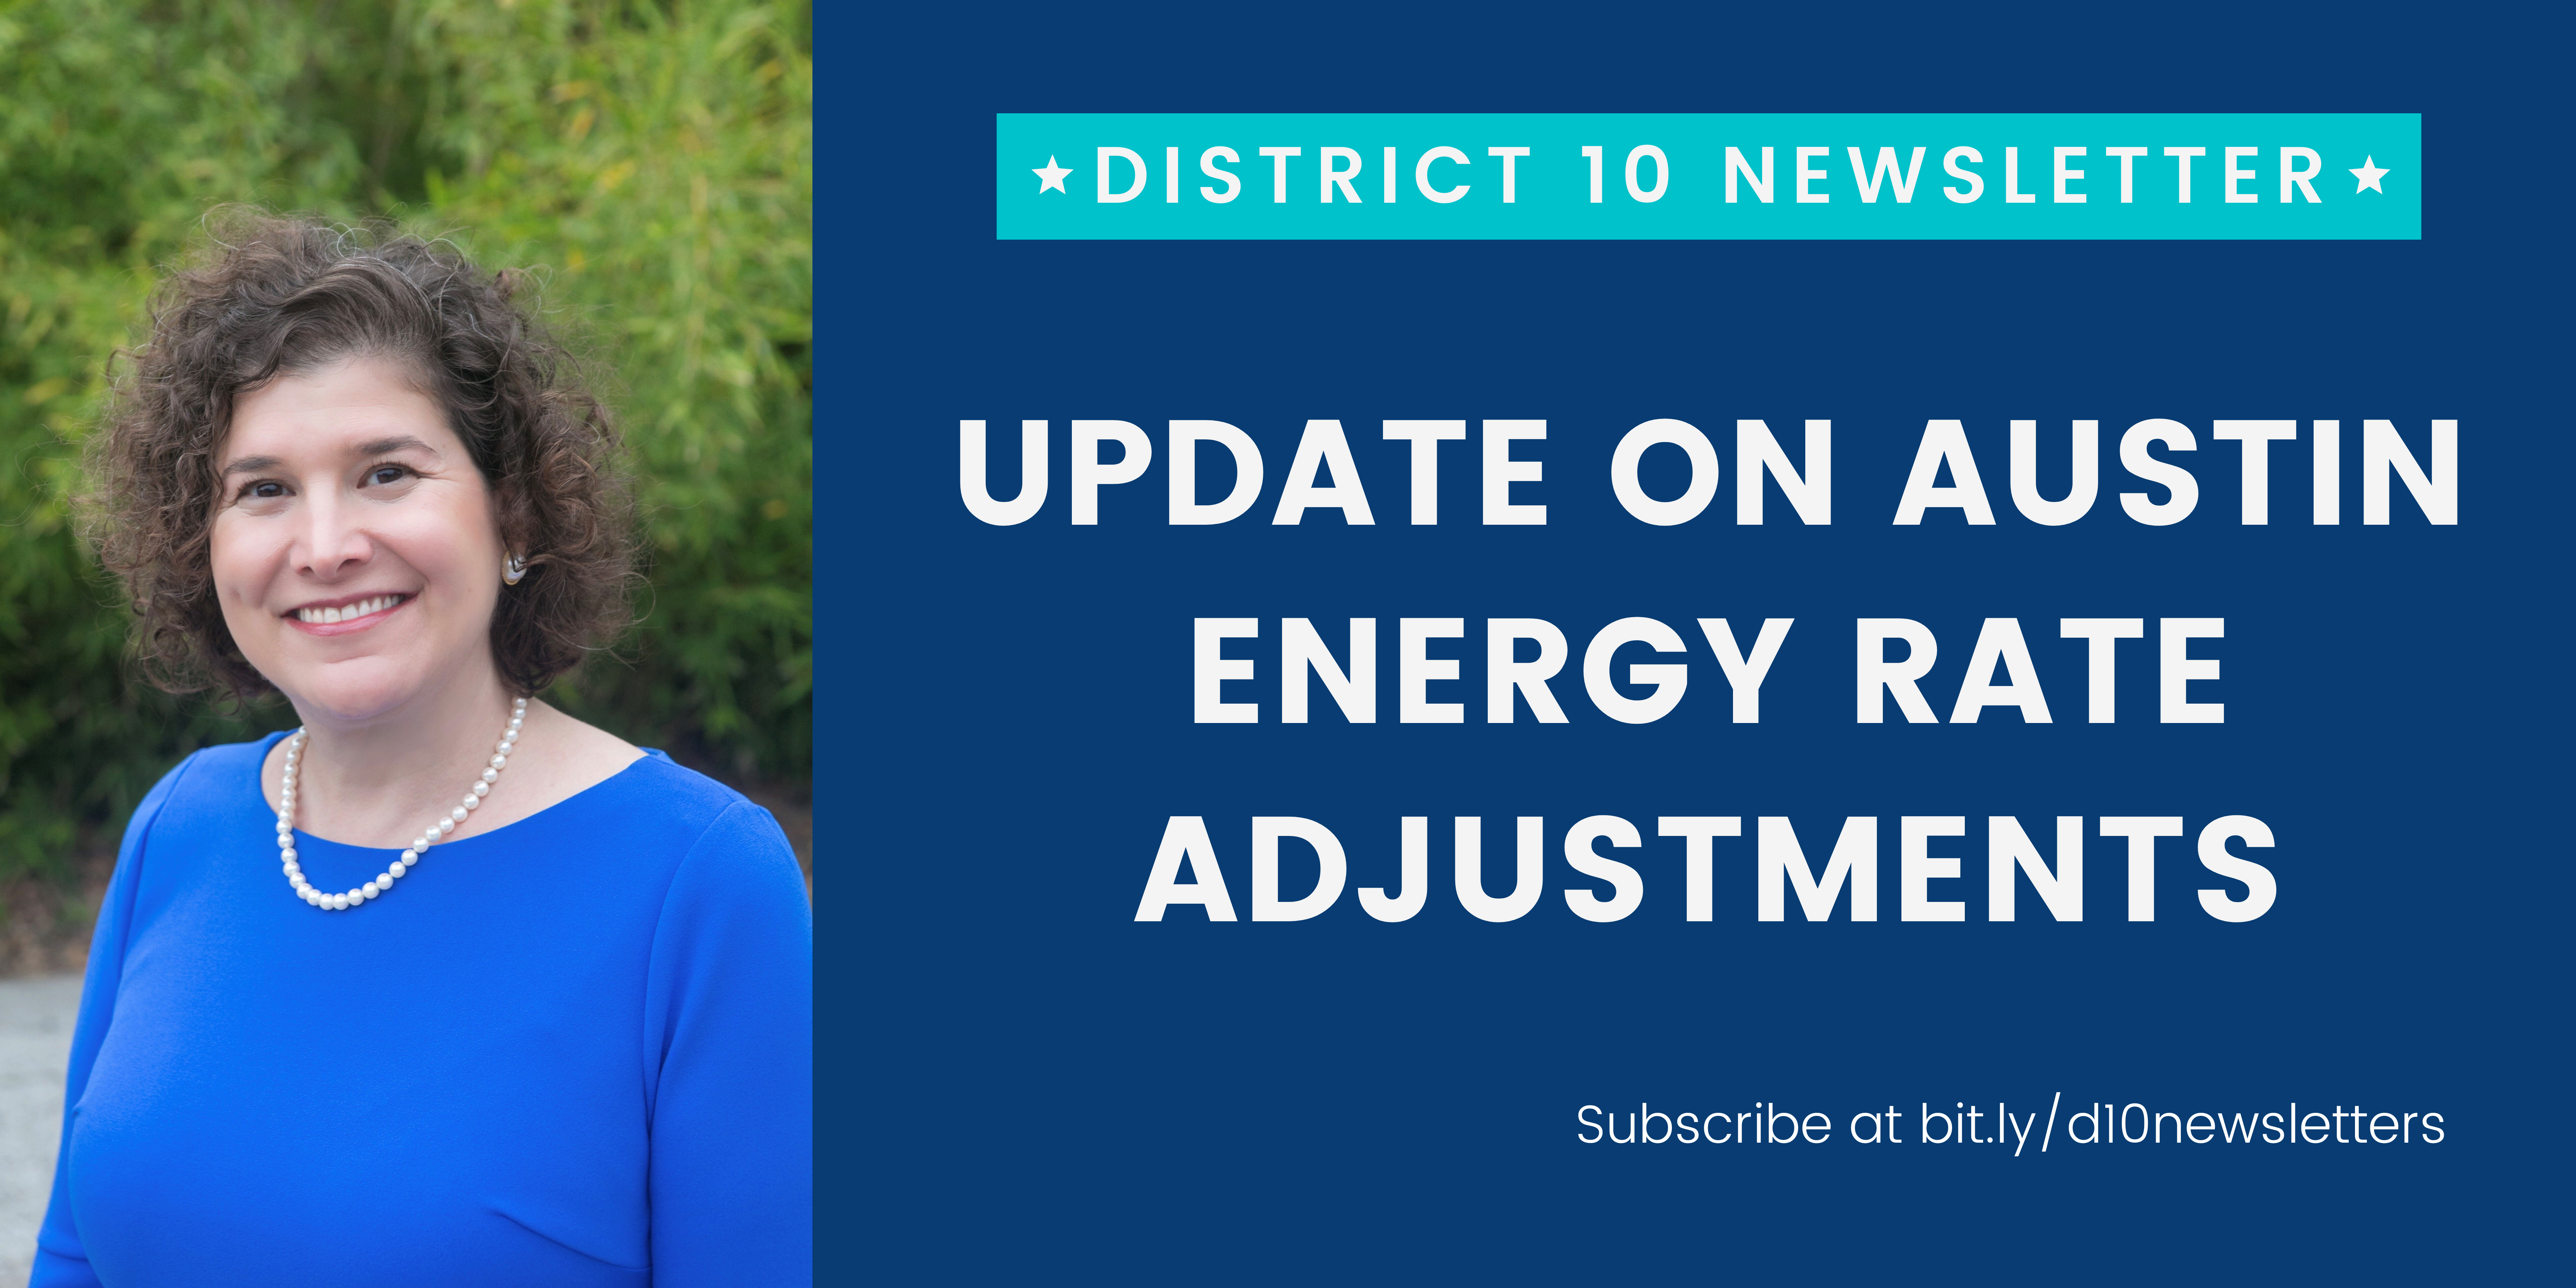 Update on Austin Energy Rate Adjustments